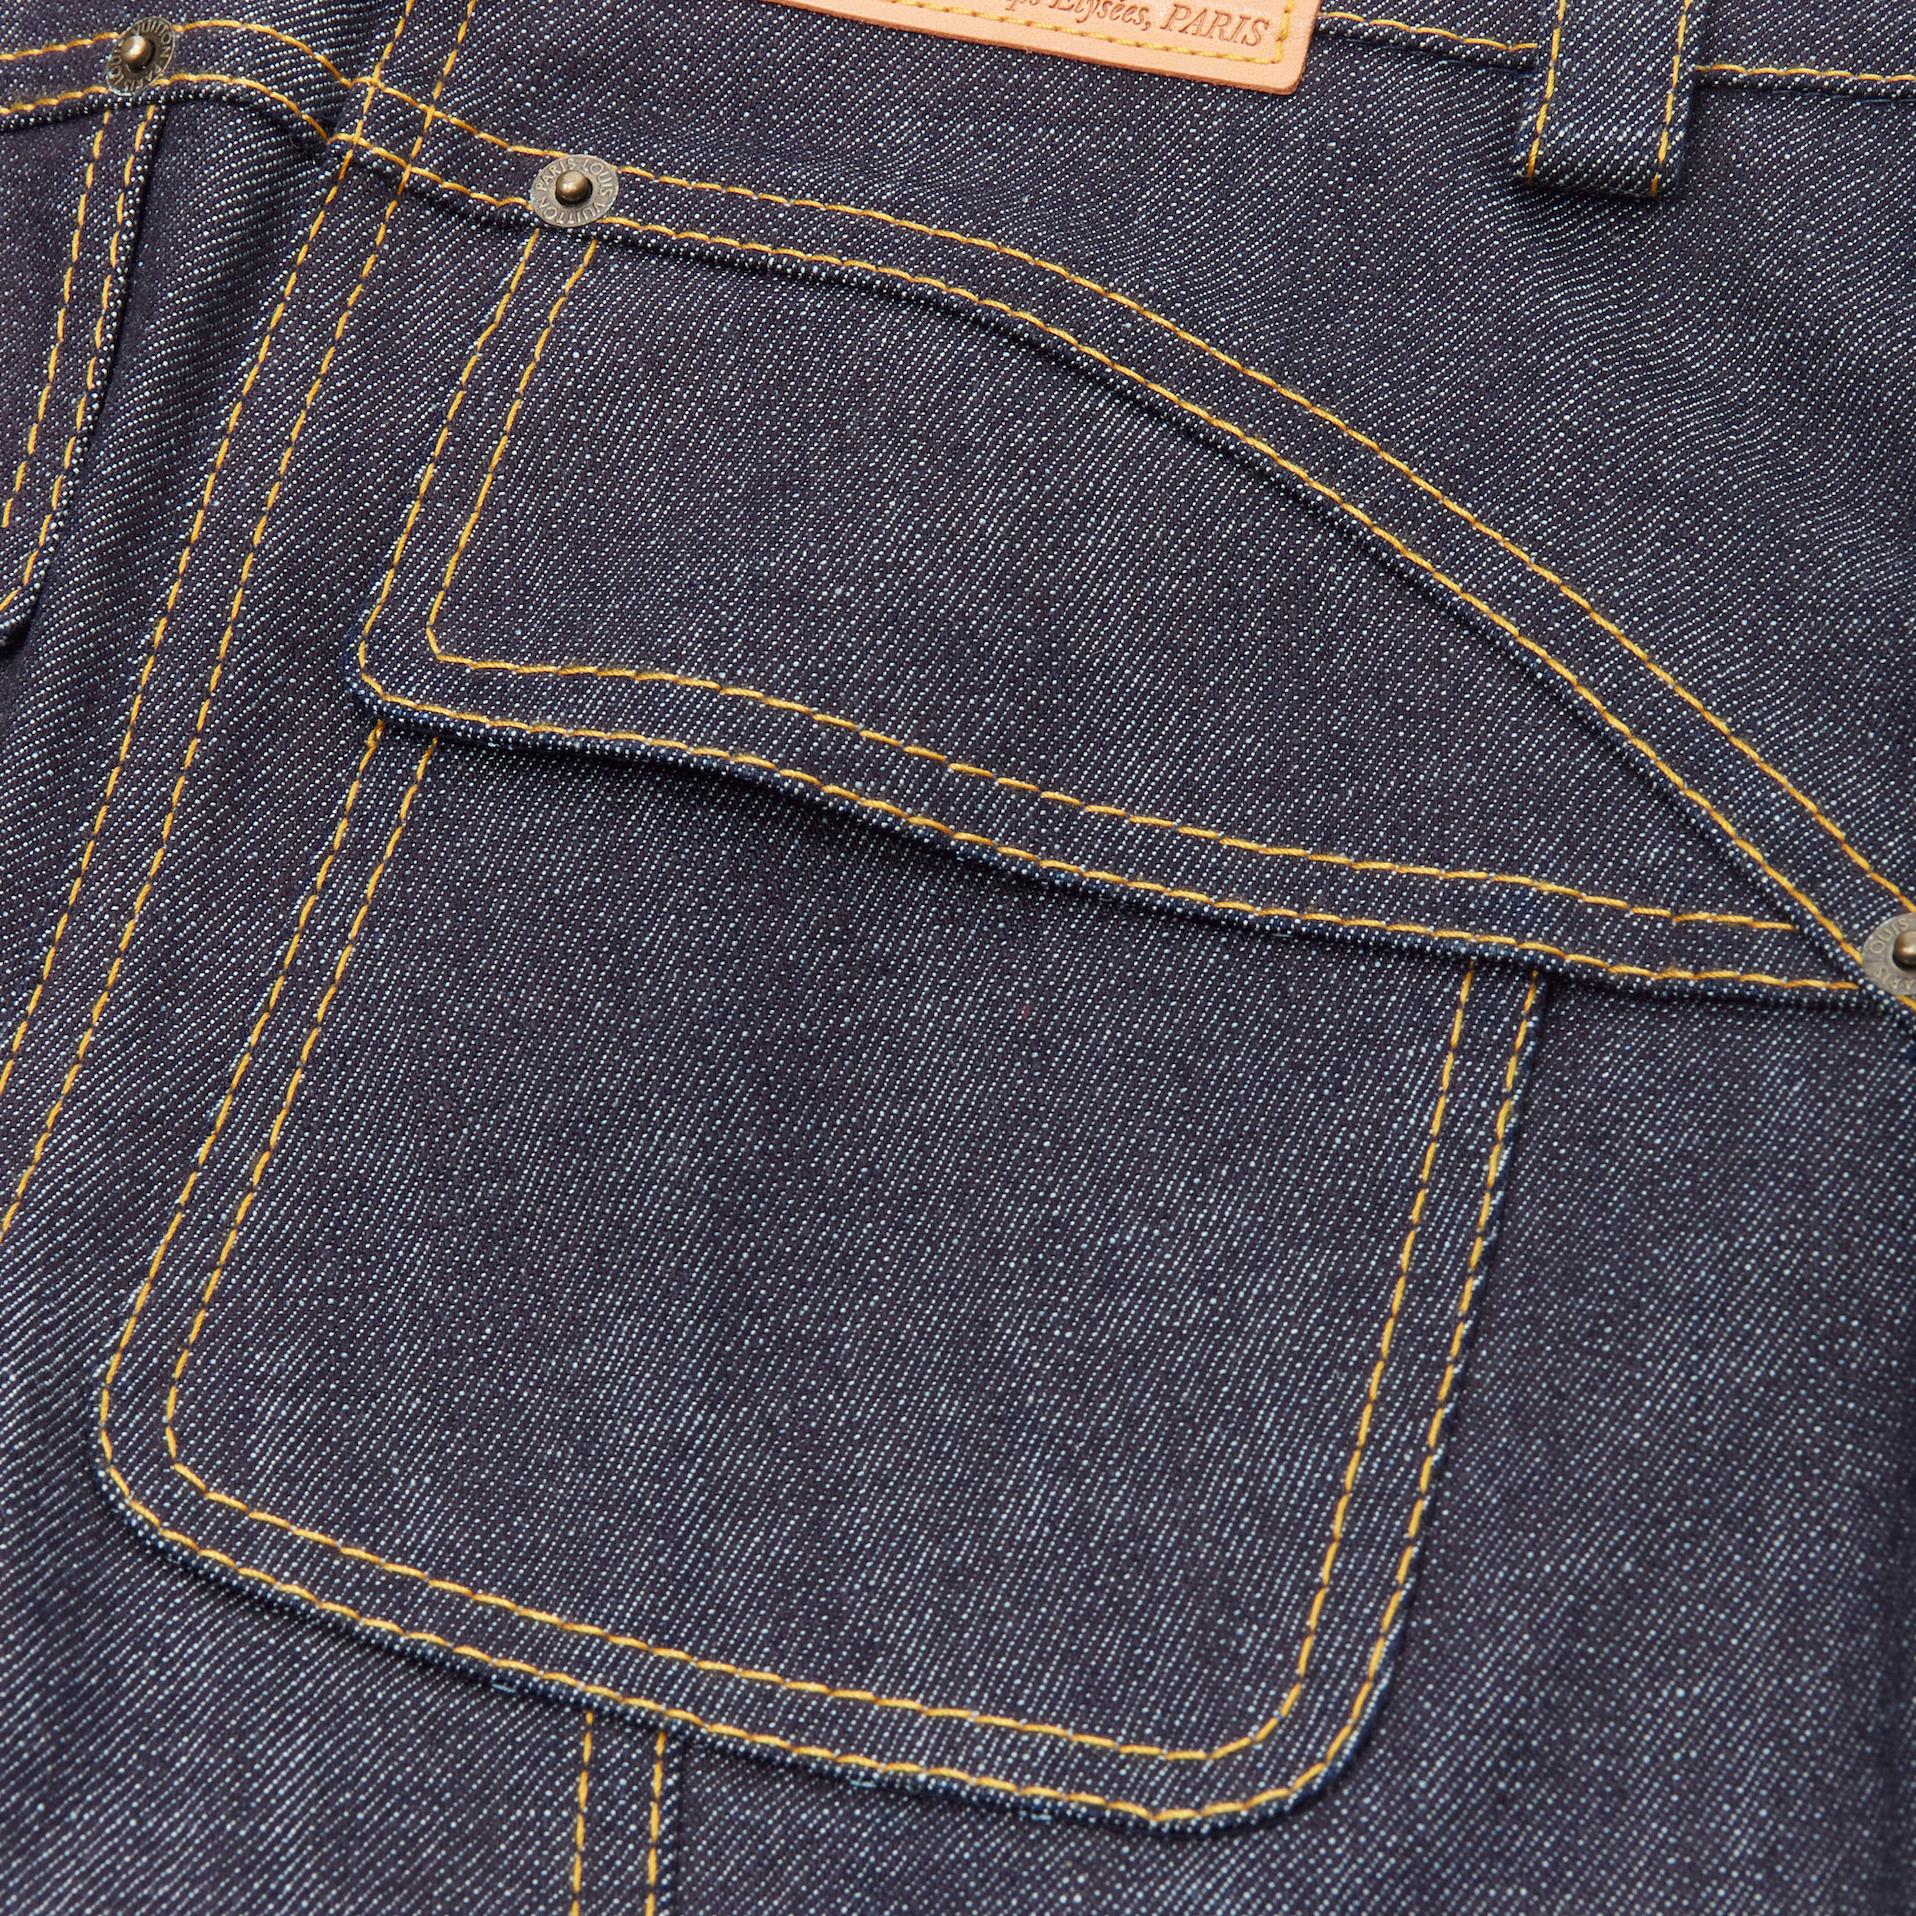 LOUIS VUITTON dark indigo blue denim overstitch foldover pocket shorts FR34  XS 1